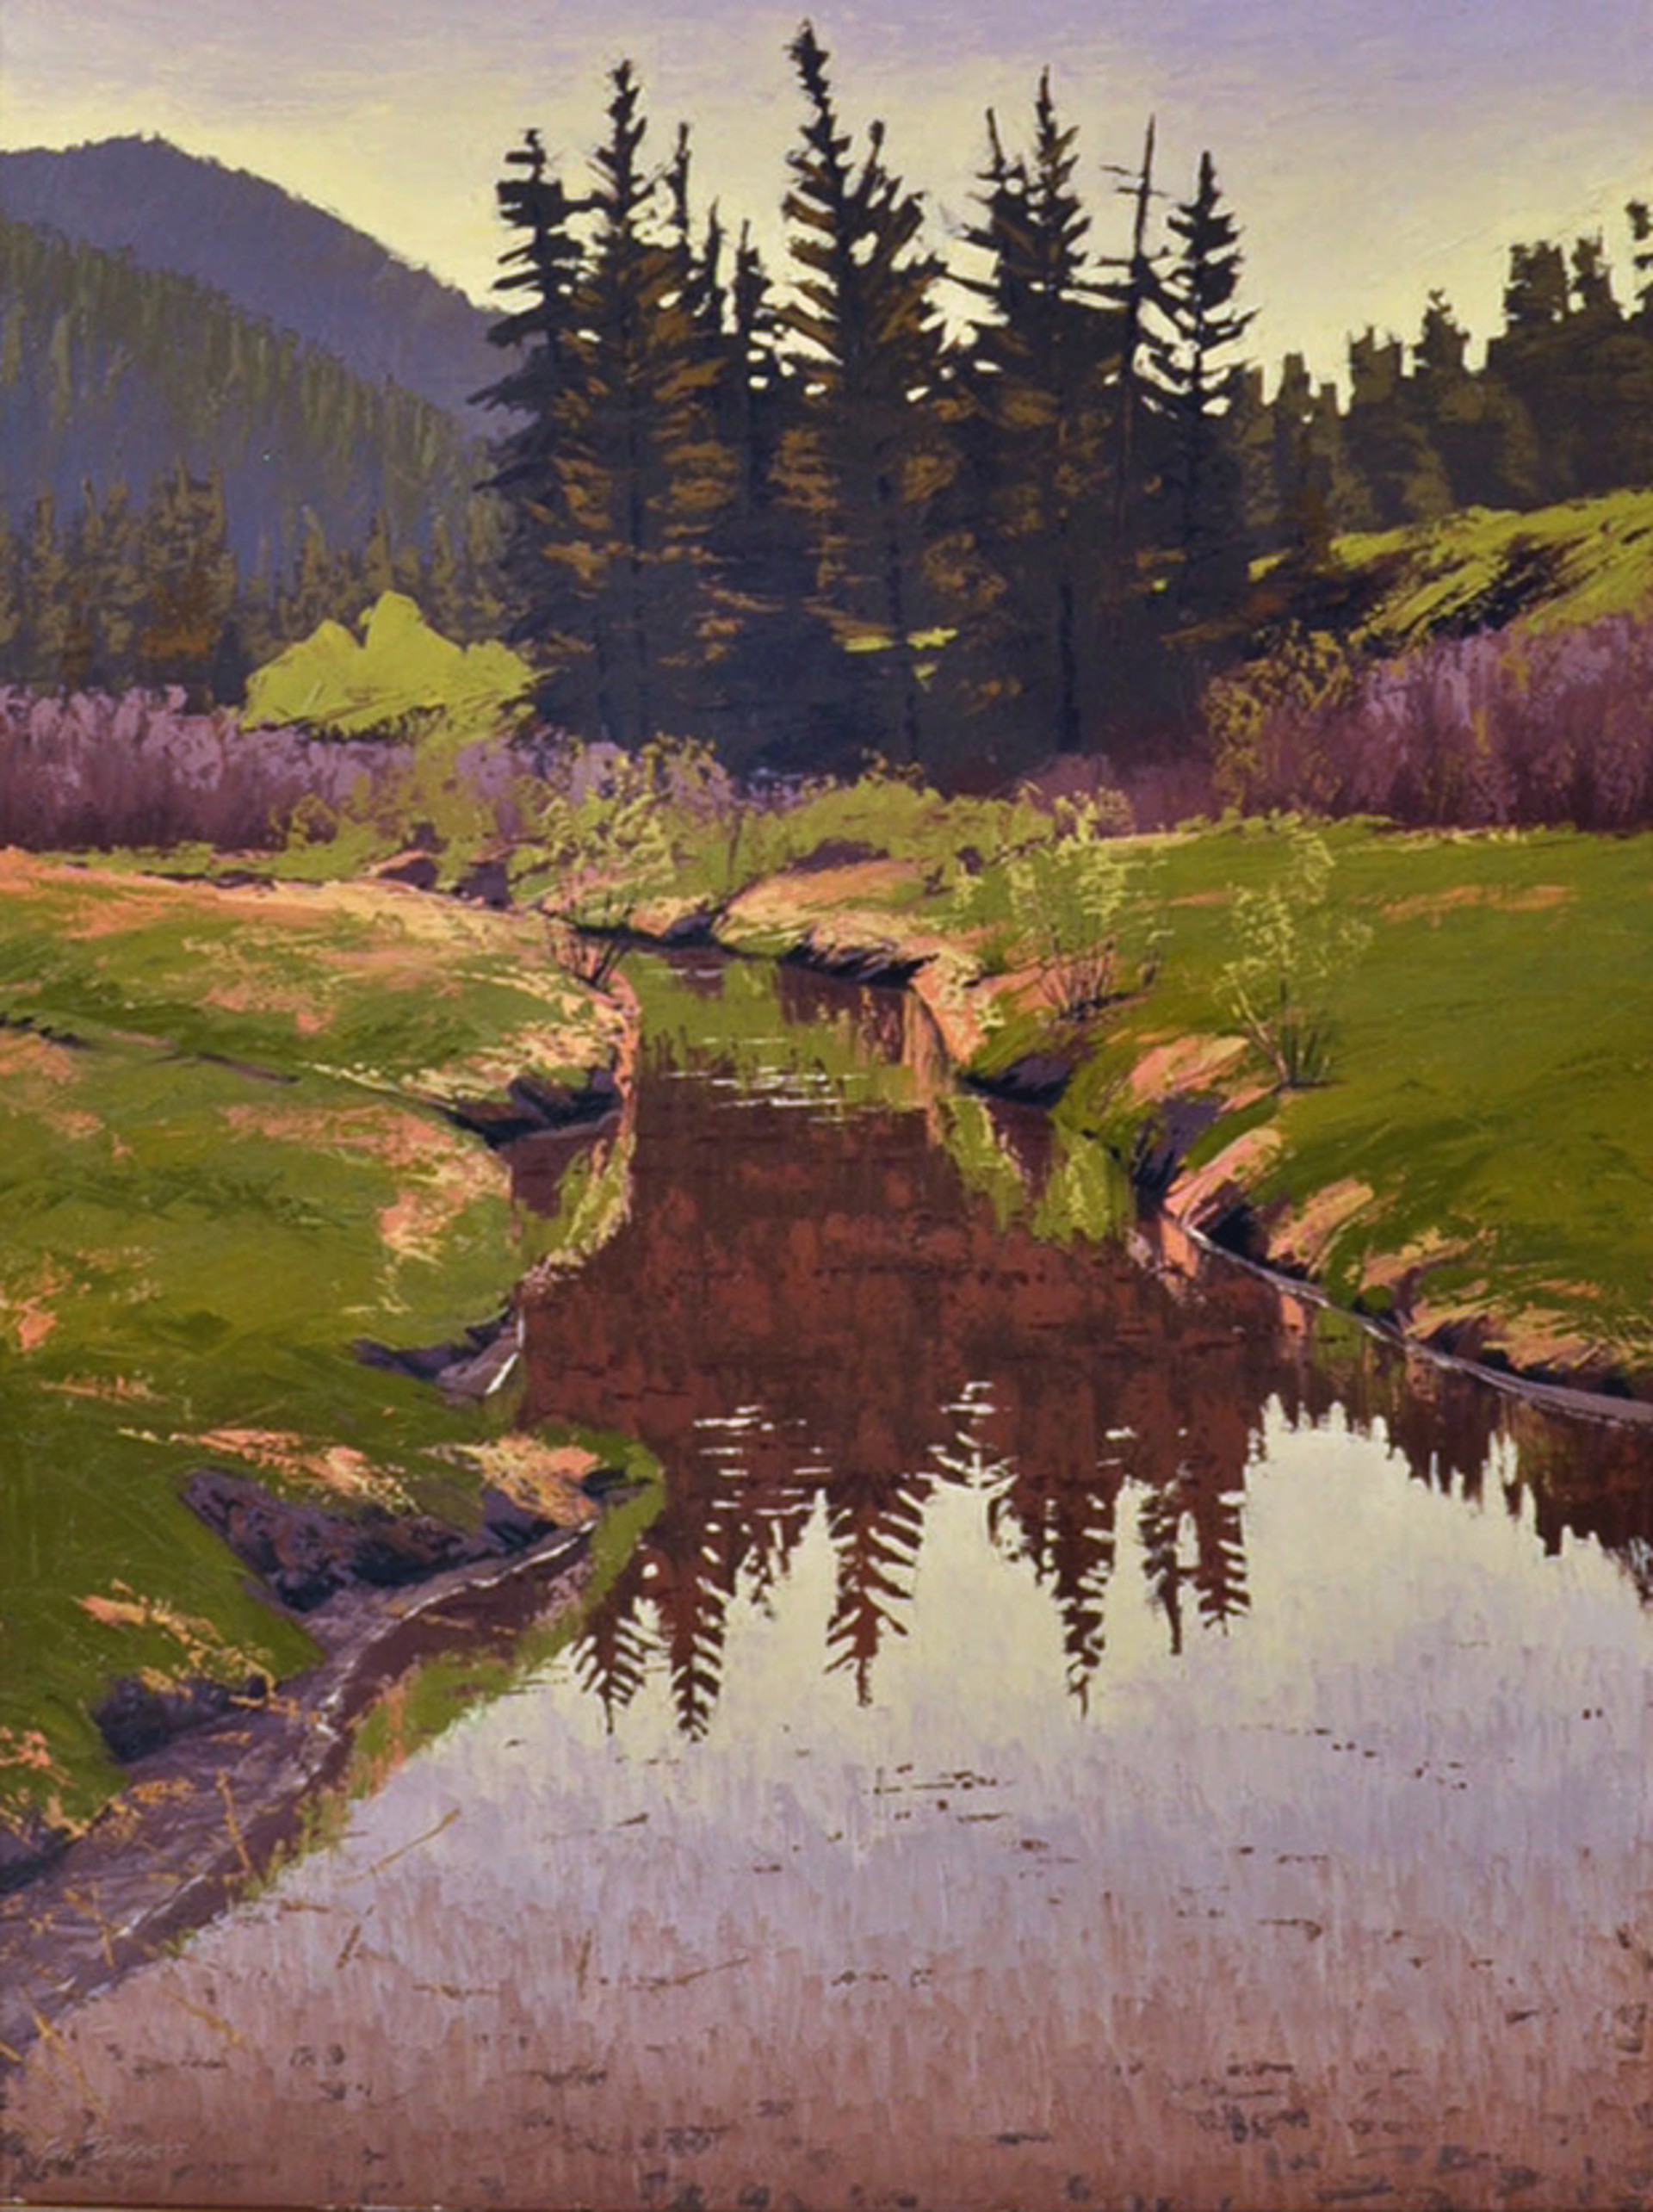 Morning in the Meadow by Ken Daggett